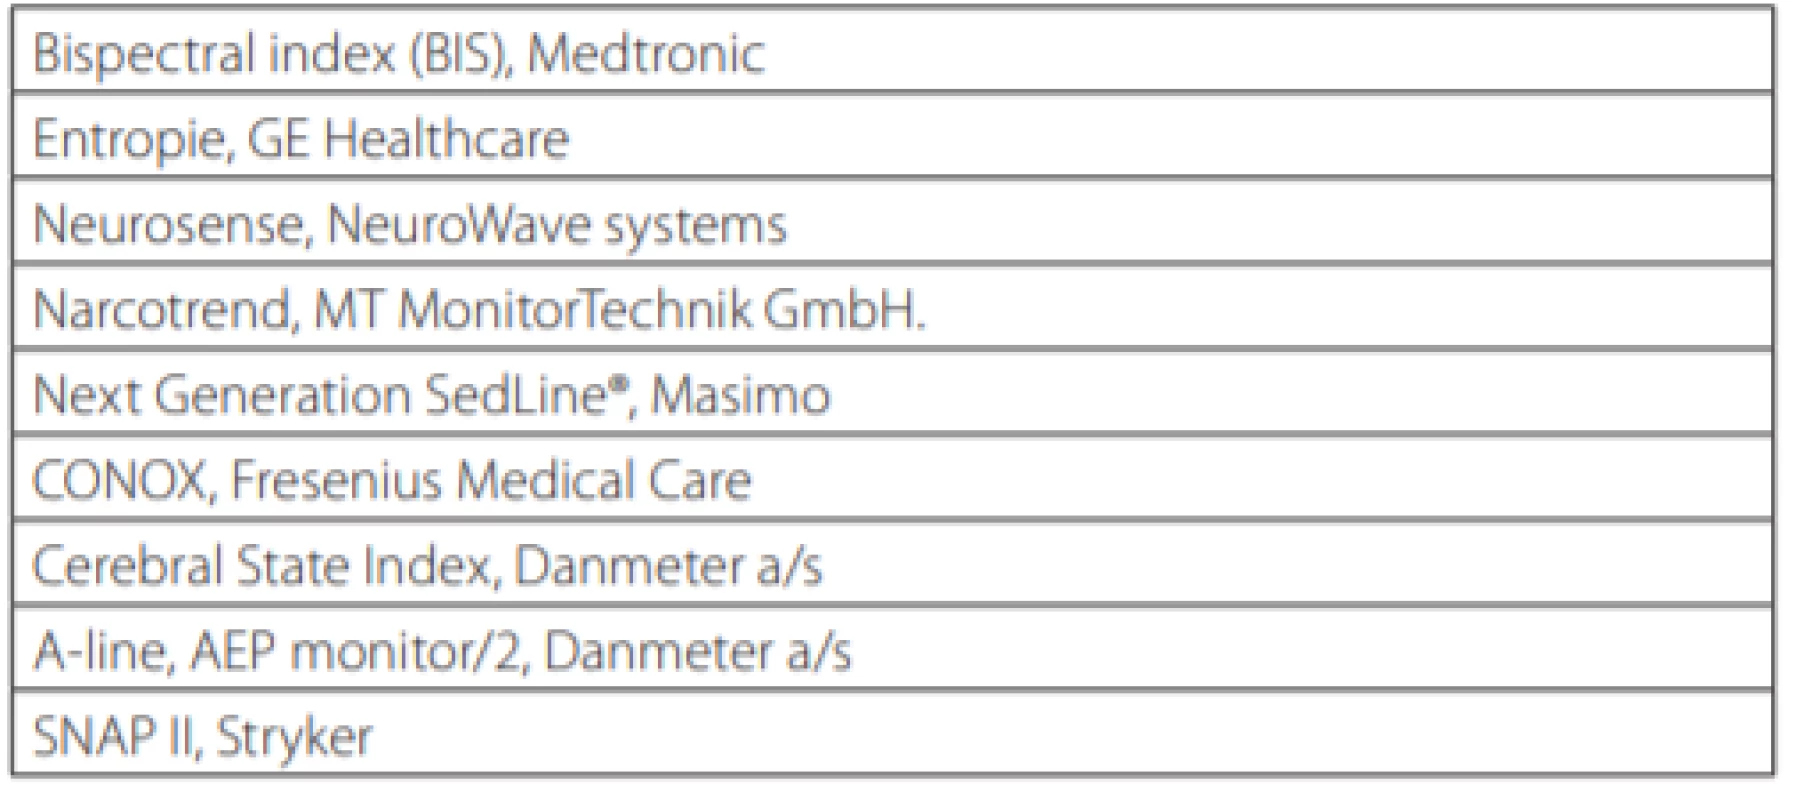 Dostupné monitory hloubky anestezie/sedace založené alespoň
z části na procesovaném EEG (volně podle [15])